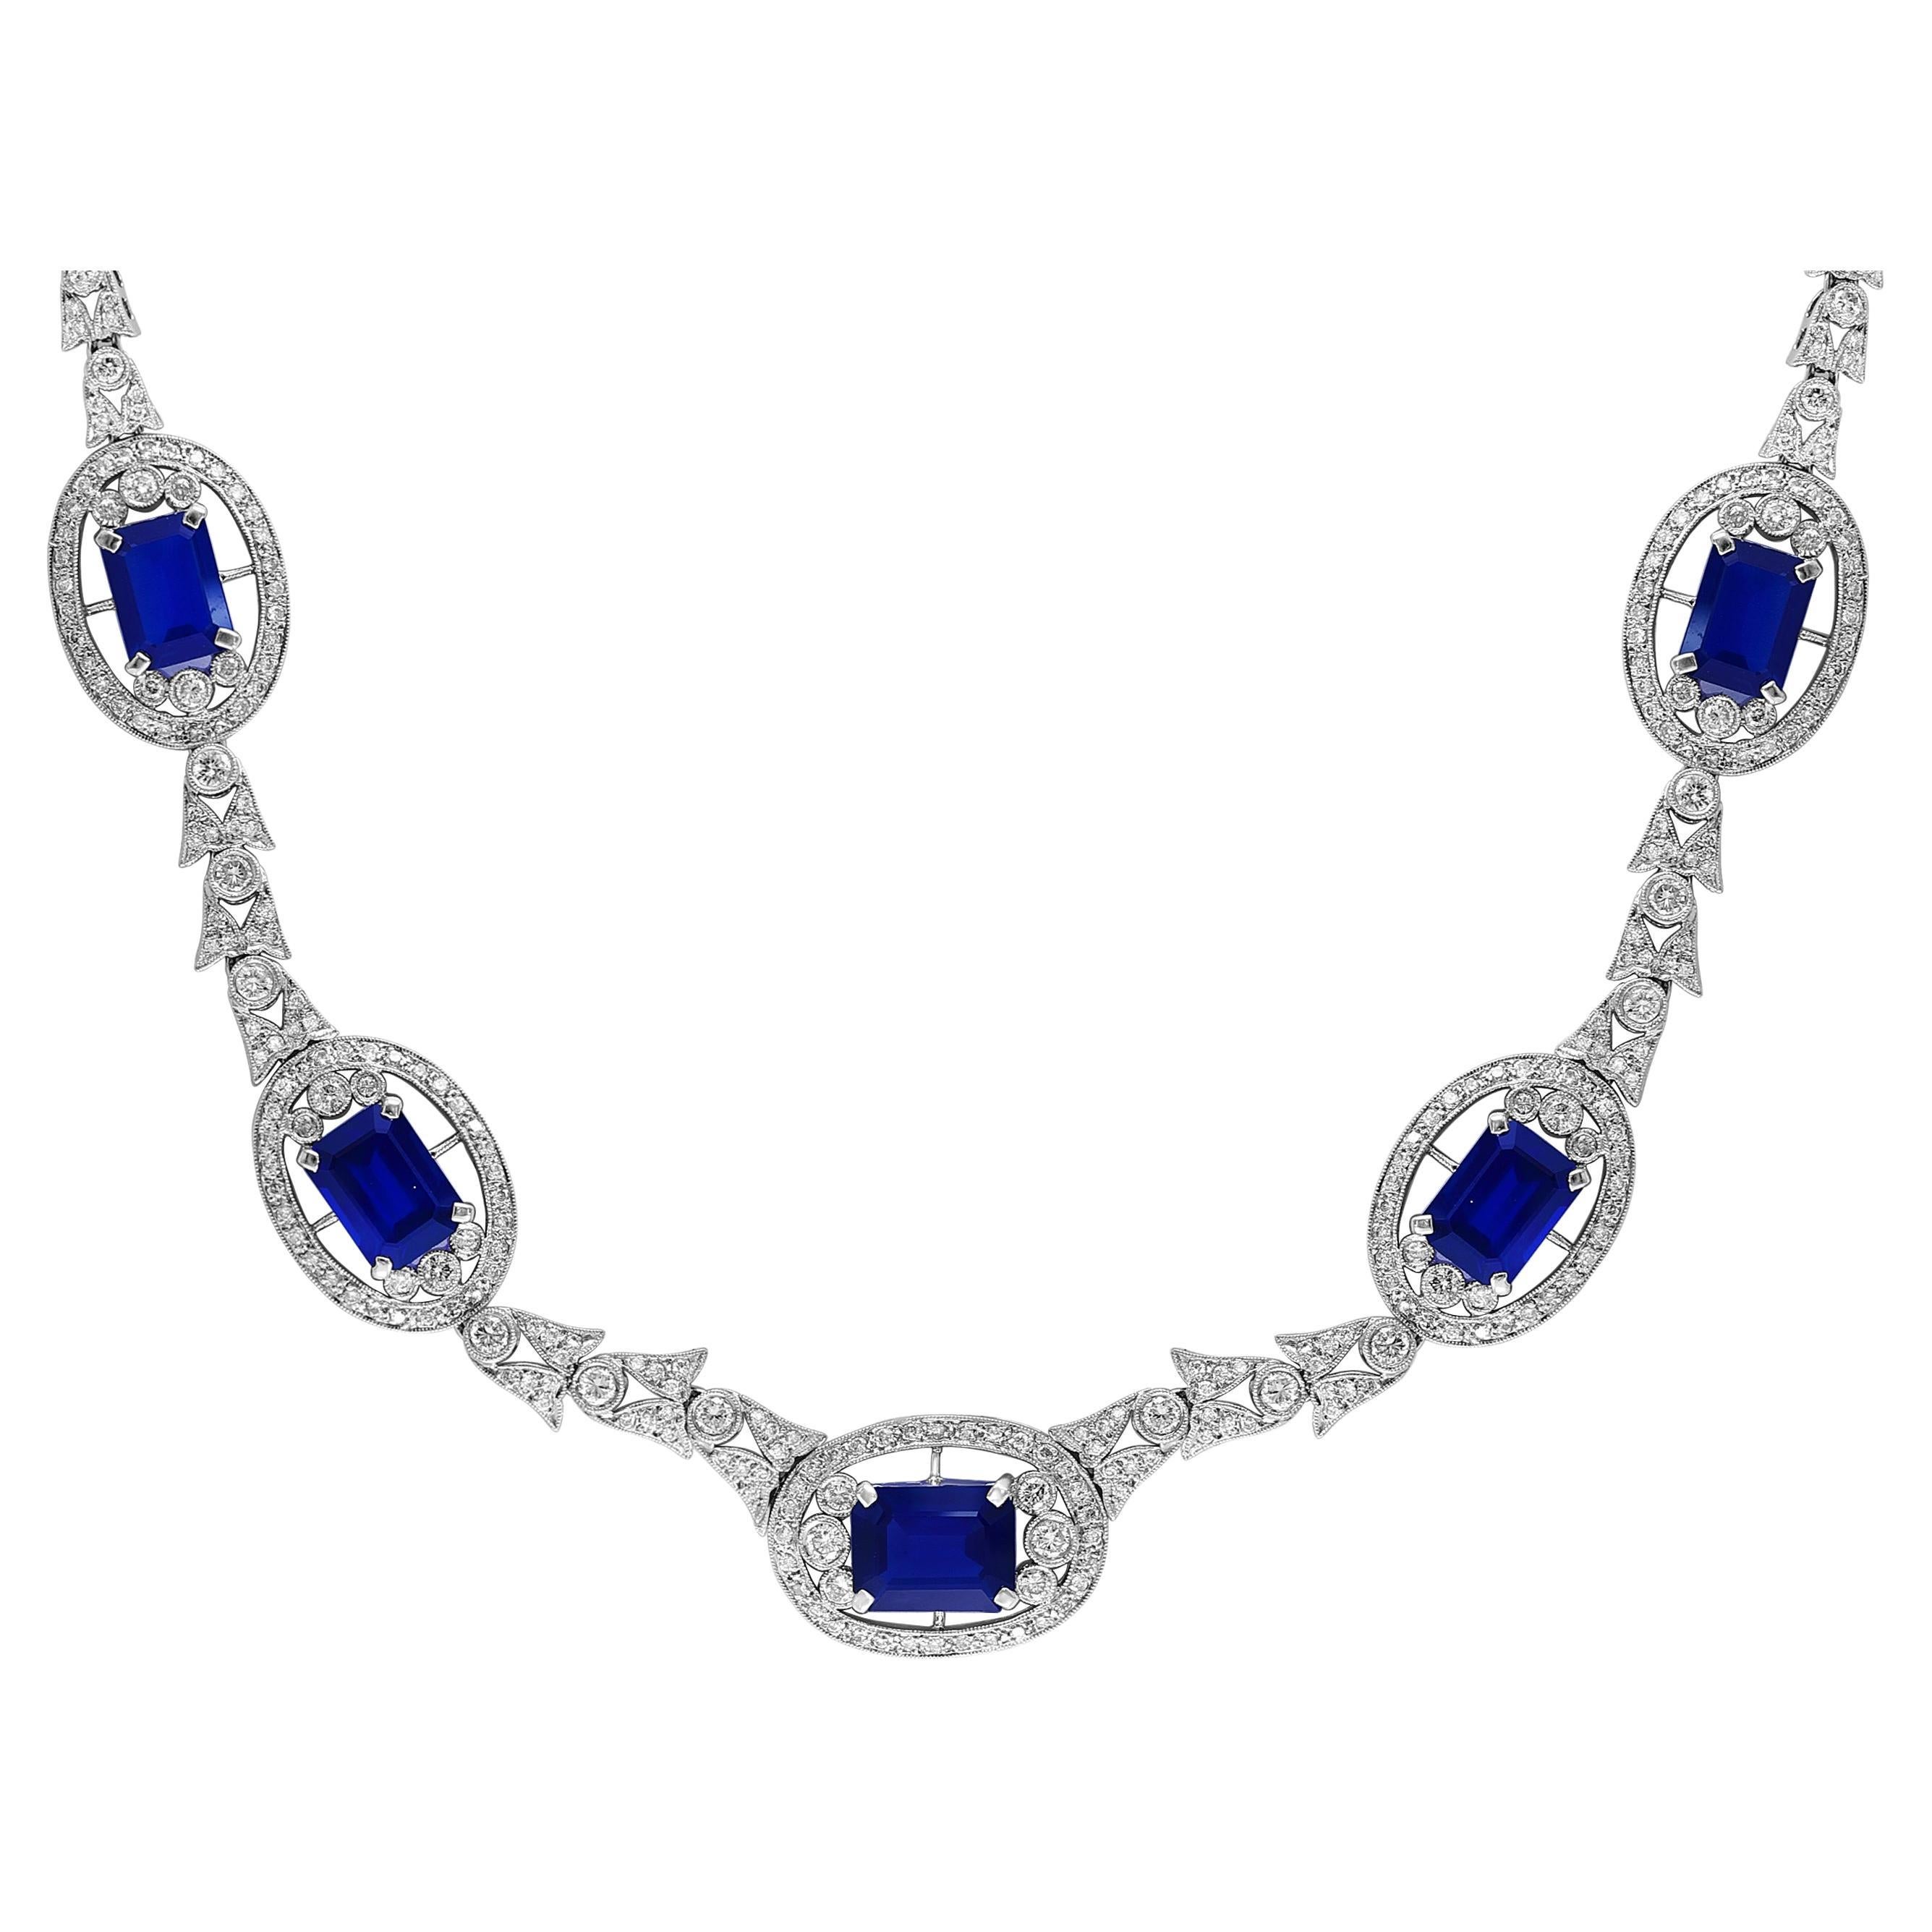 GIA zertifiziert natürlichen blauen Saphir & Diamant-Halskette 18 Kt Weißgold, Estate